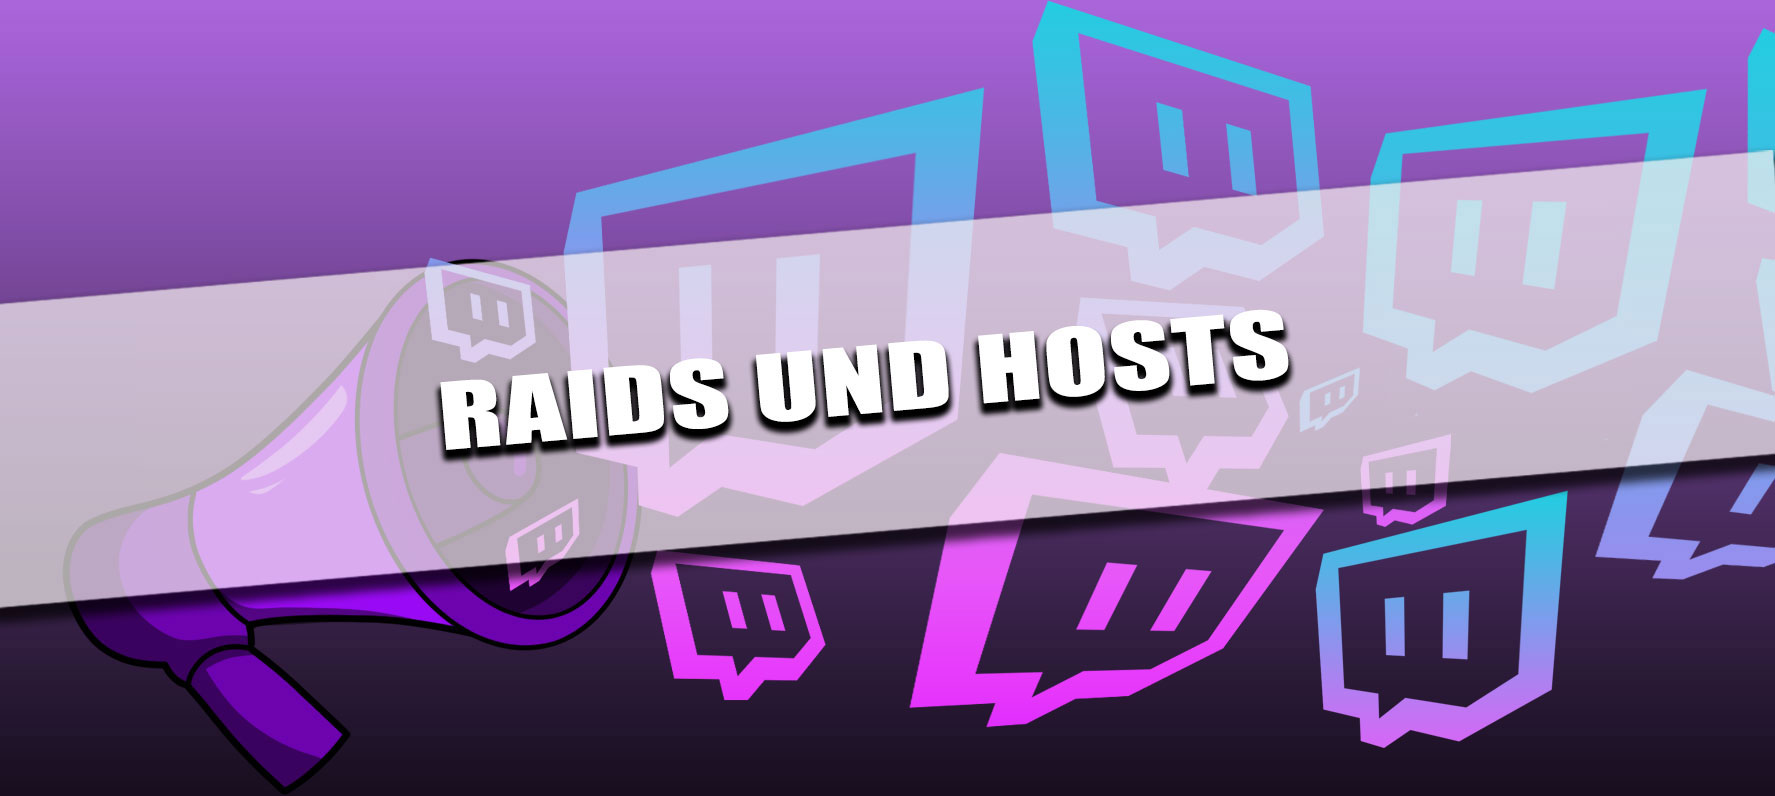 Raids und Hosts auf Twitch Lila Header mit Twitch Logo